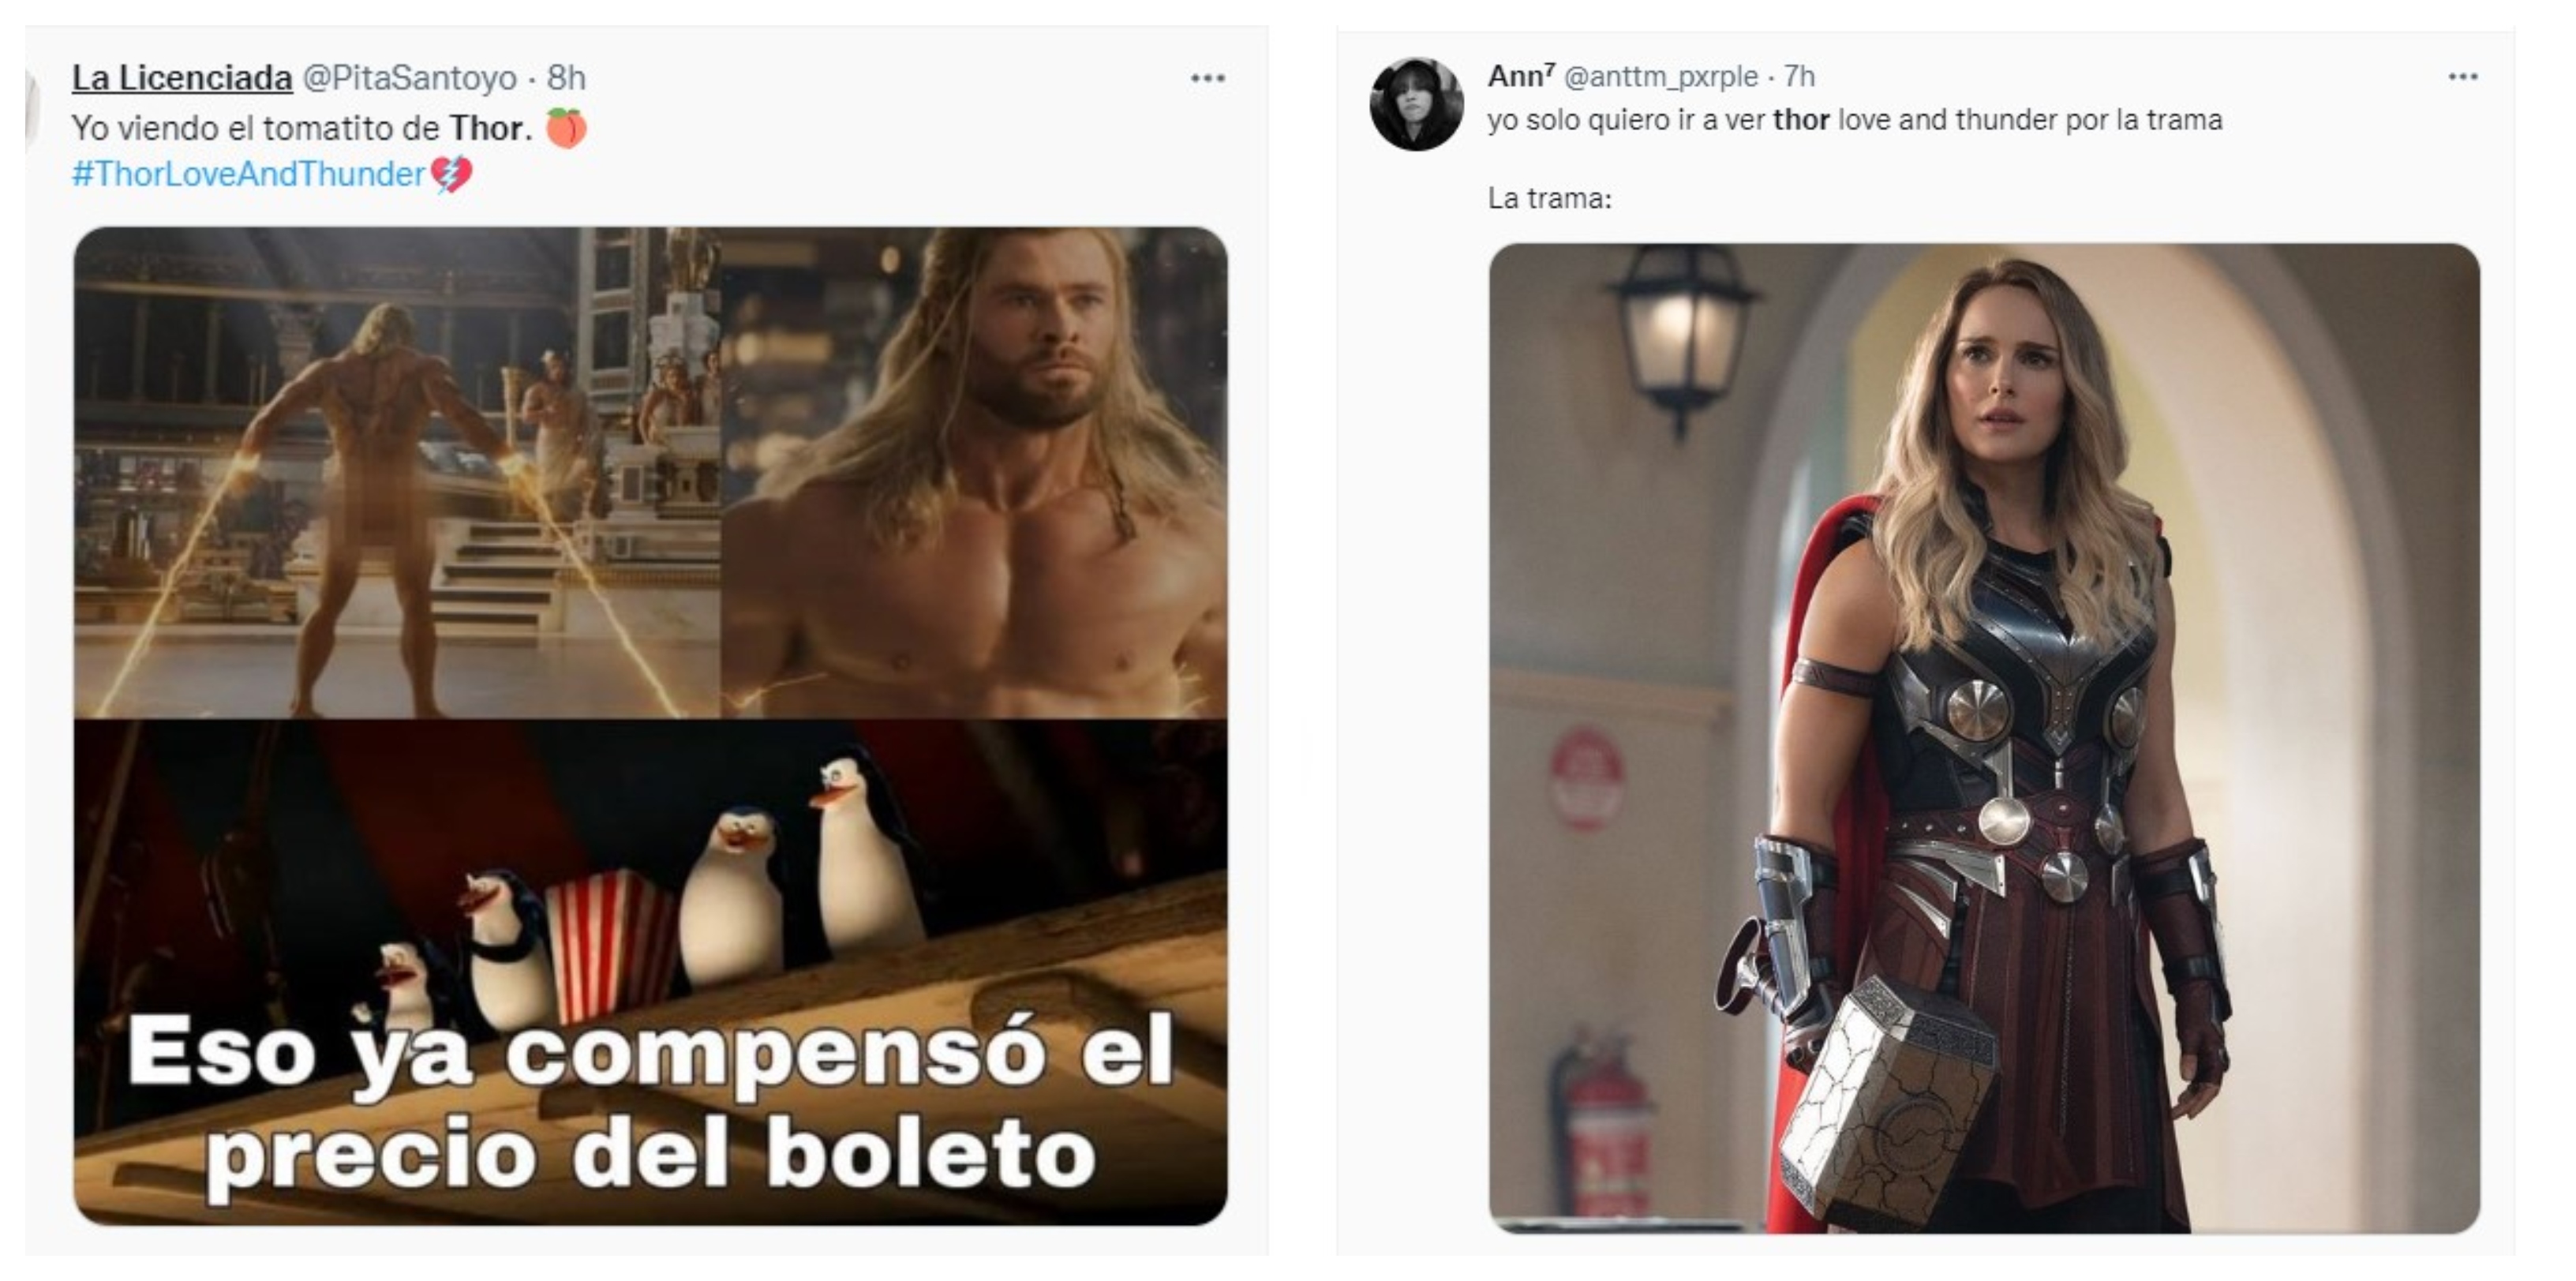 La cuarta entrega cinematográfica del Dios del trueno de Marvel por fin llegó a los cines y usuarios de redes sociales no dudaron en reaccionar con memes (Fotos: Captura de pantalla Twitter)